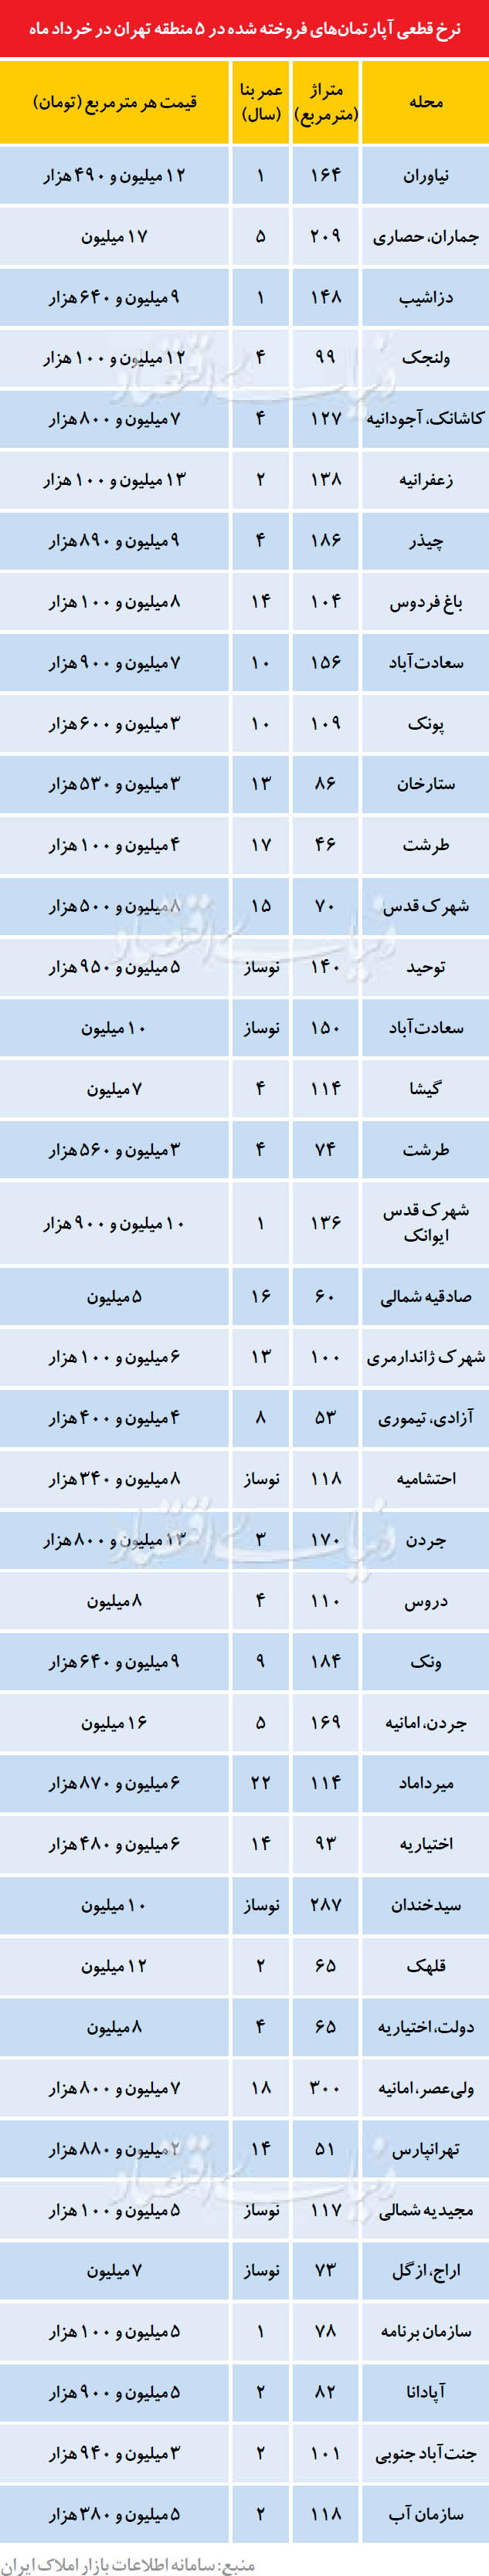 قیمت آپارتمان در 5 منطقه تهران (جدول)